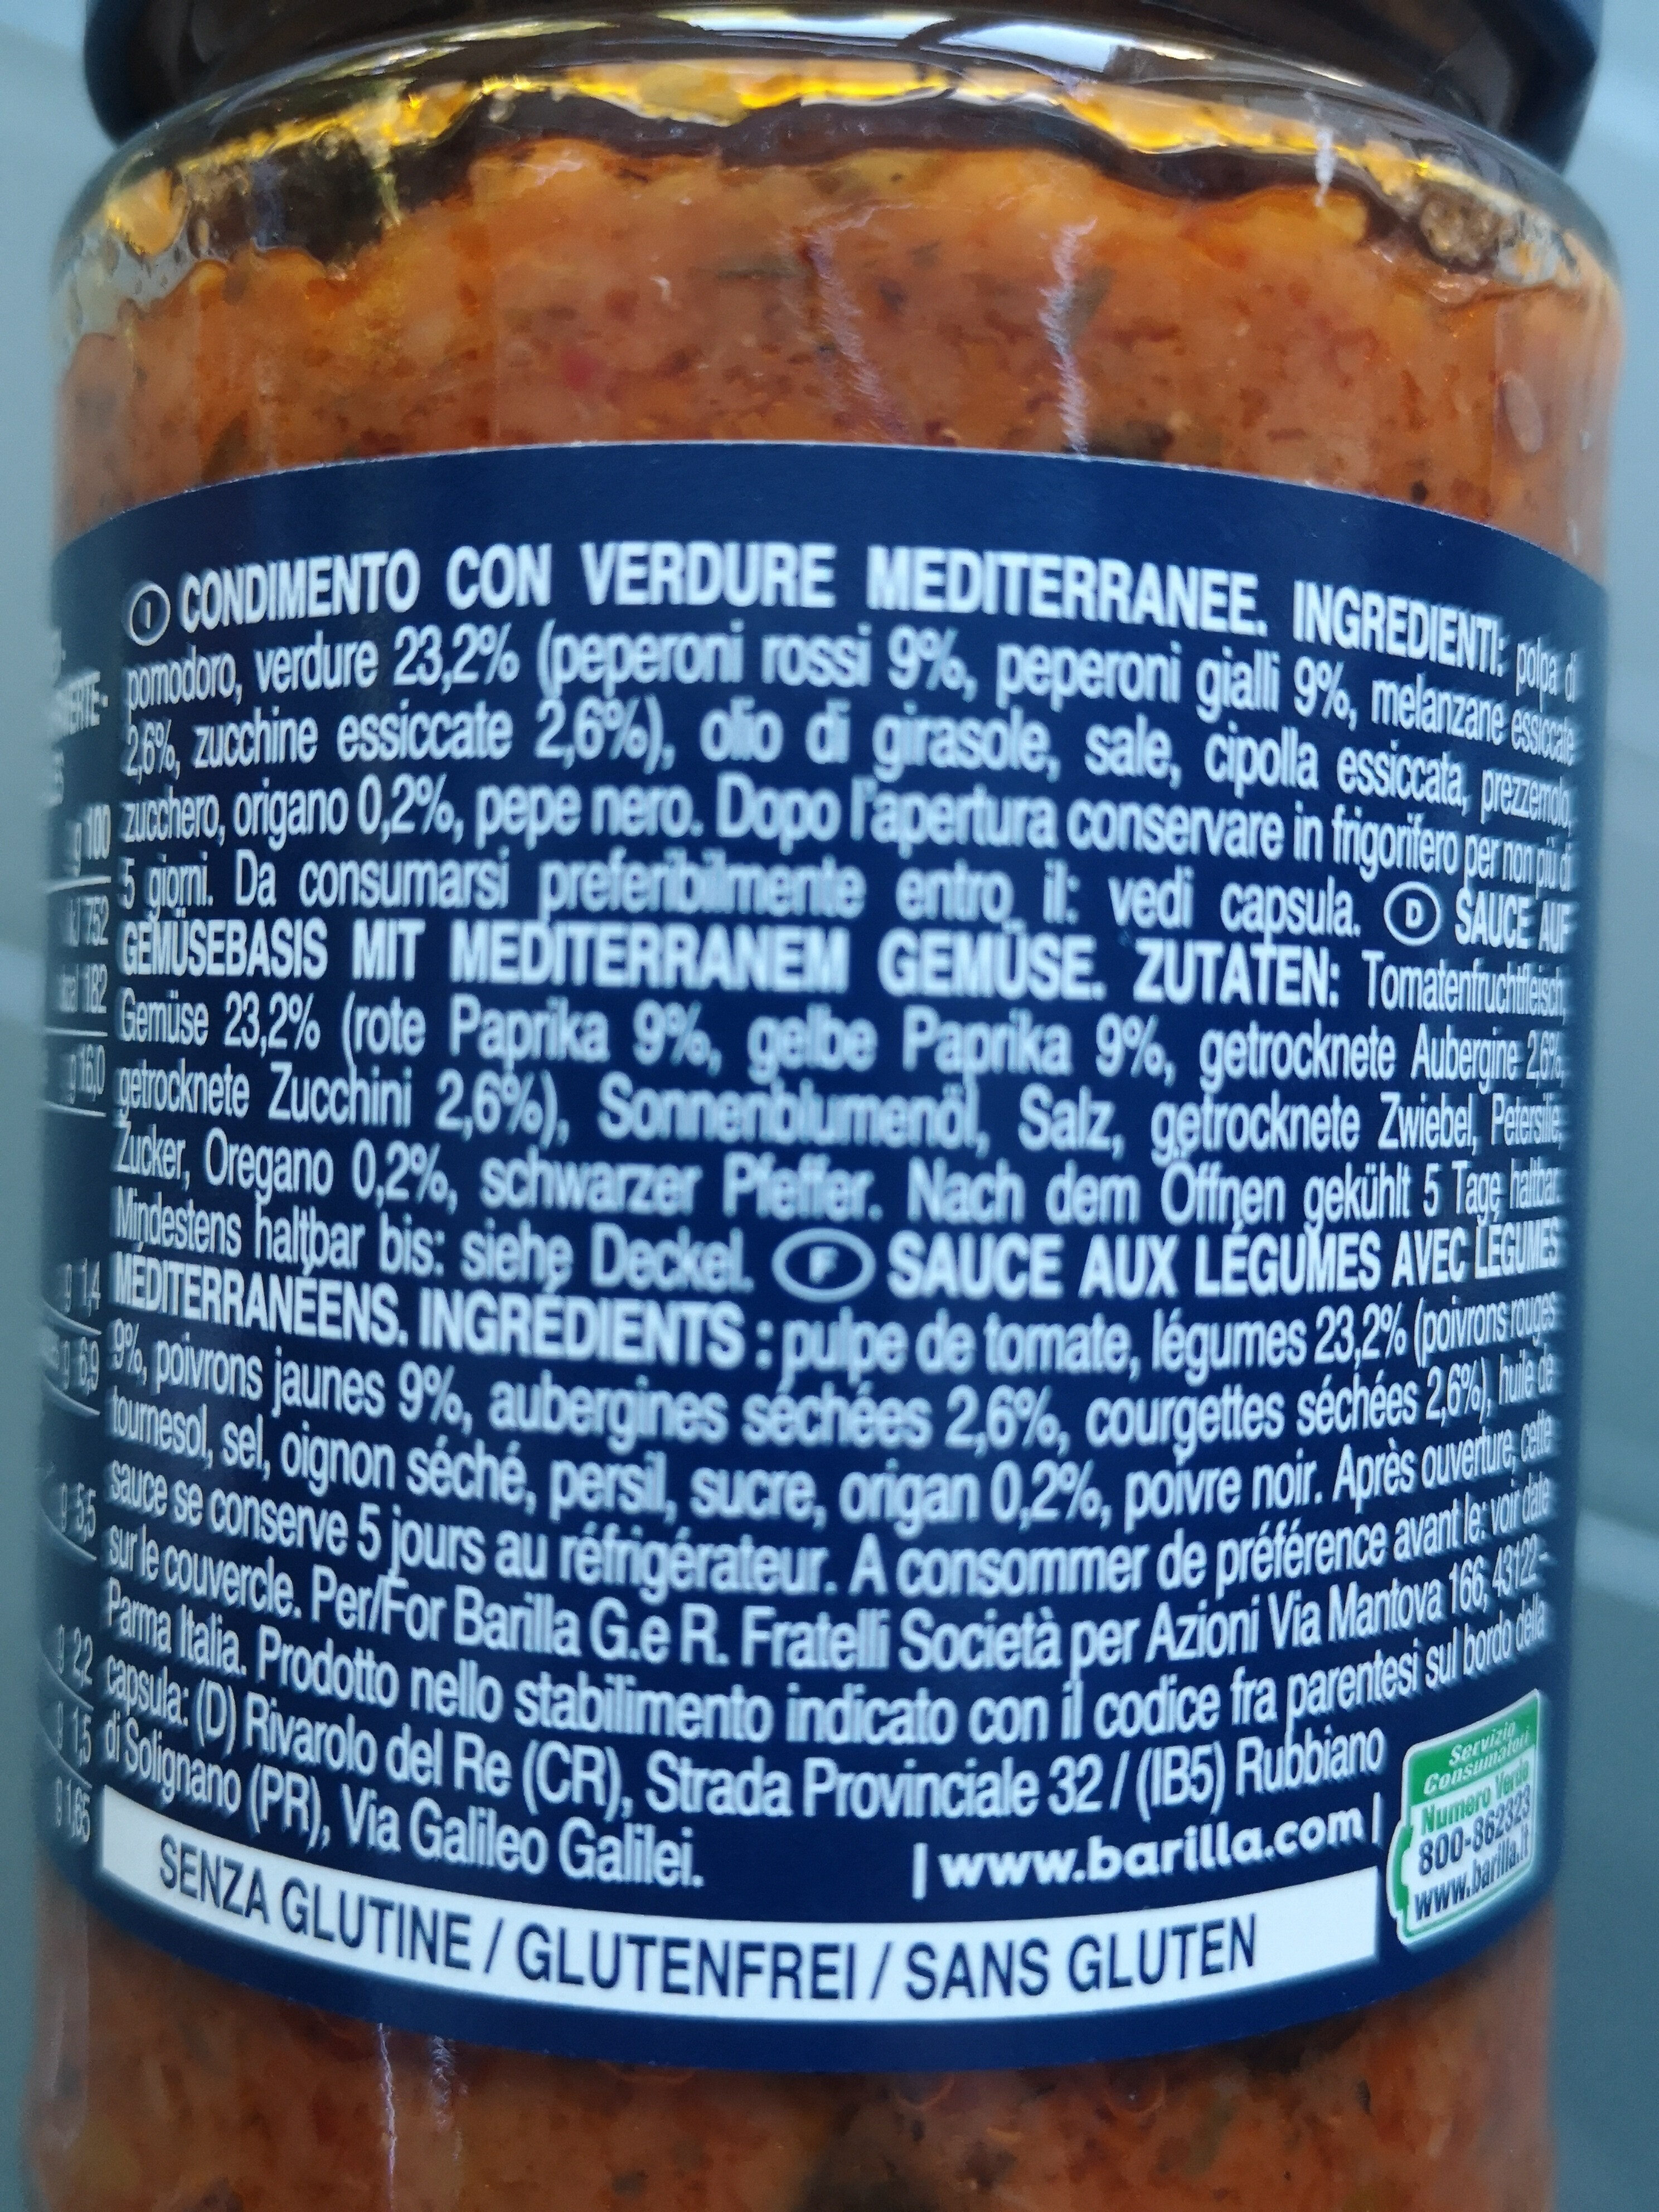 Sauce auf Gemüsebasis mit Mediterranen Gemüse - Ingrédients